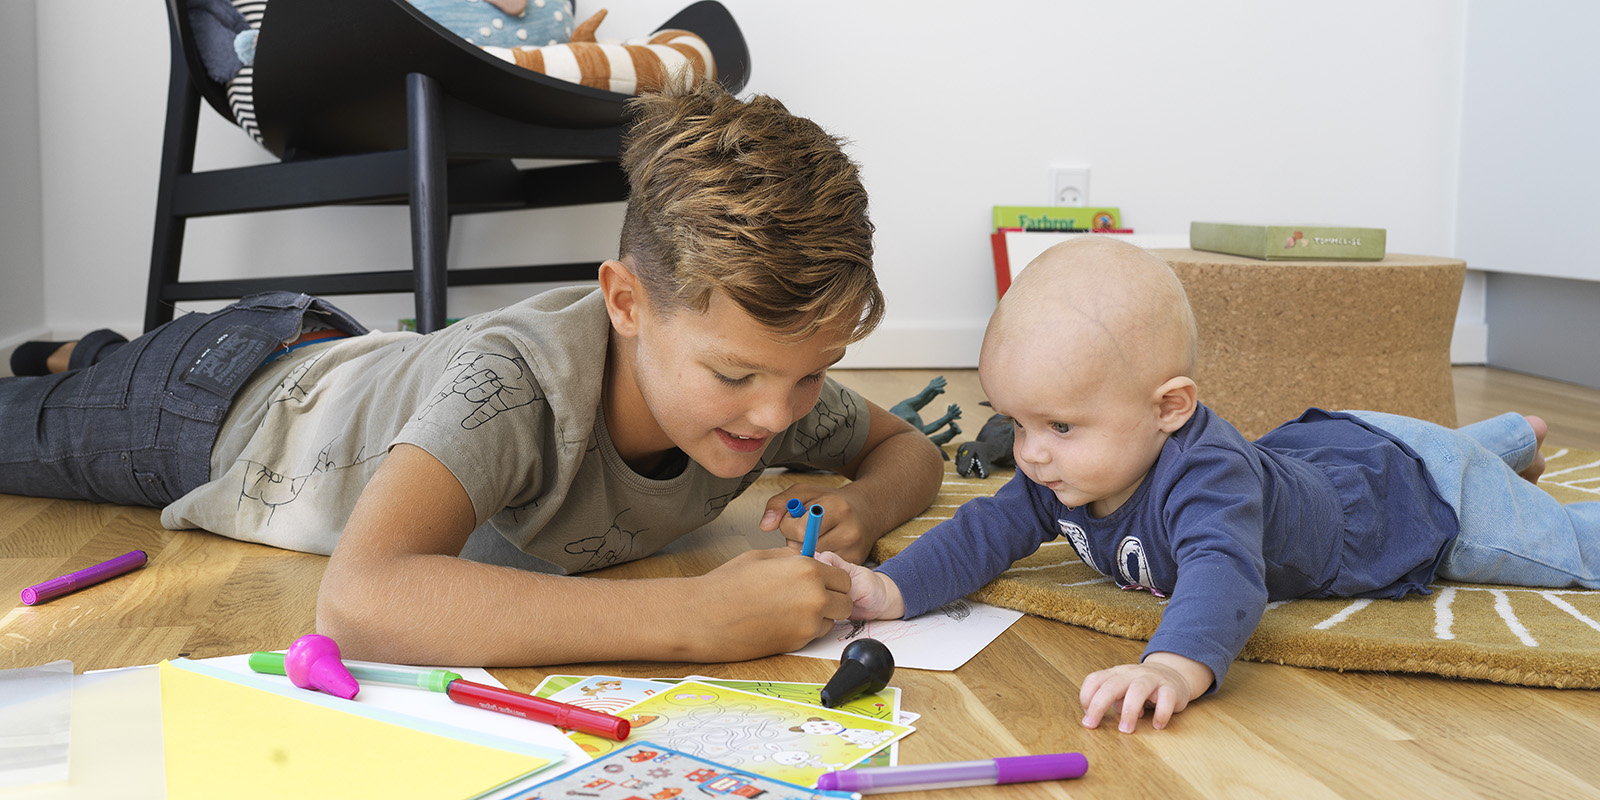 En ung pojke och en liten bebis ligger på golvet i en bostad och ritar på ett papper.